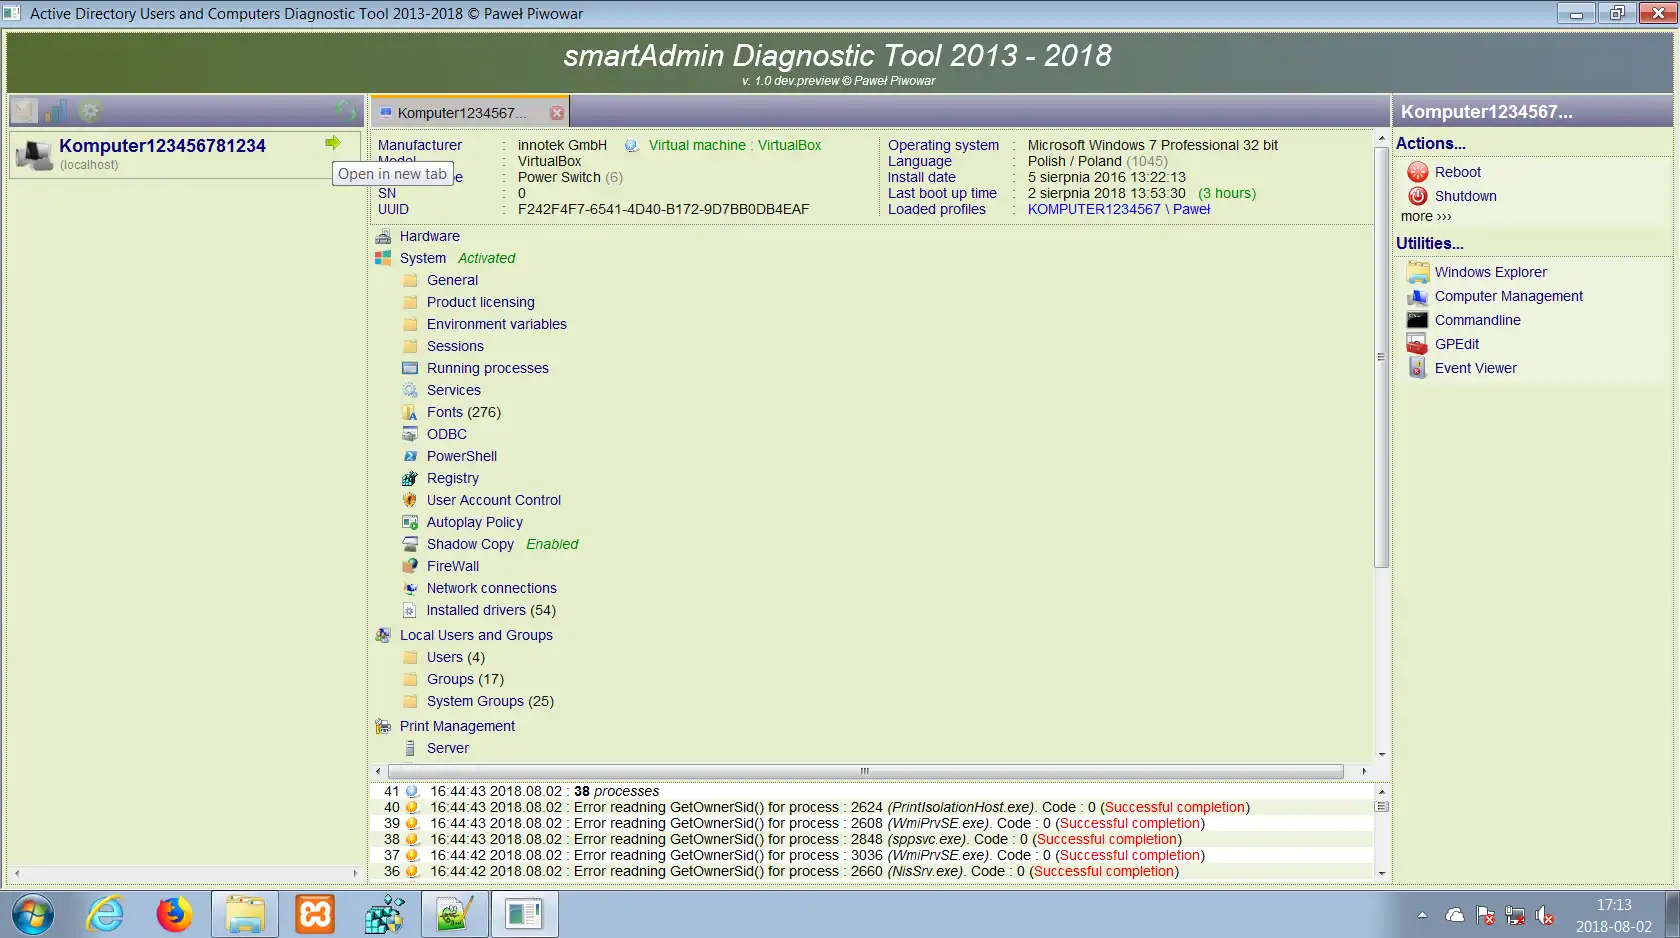 Laden Sie das Web-Tool oder die Web-App smartADmin Diagnostic Tool herunter